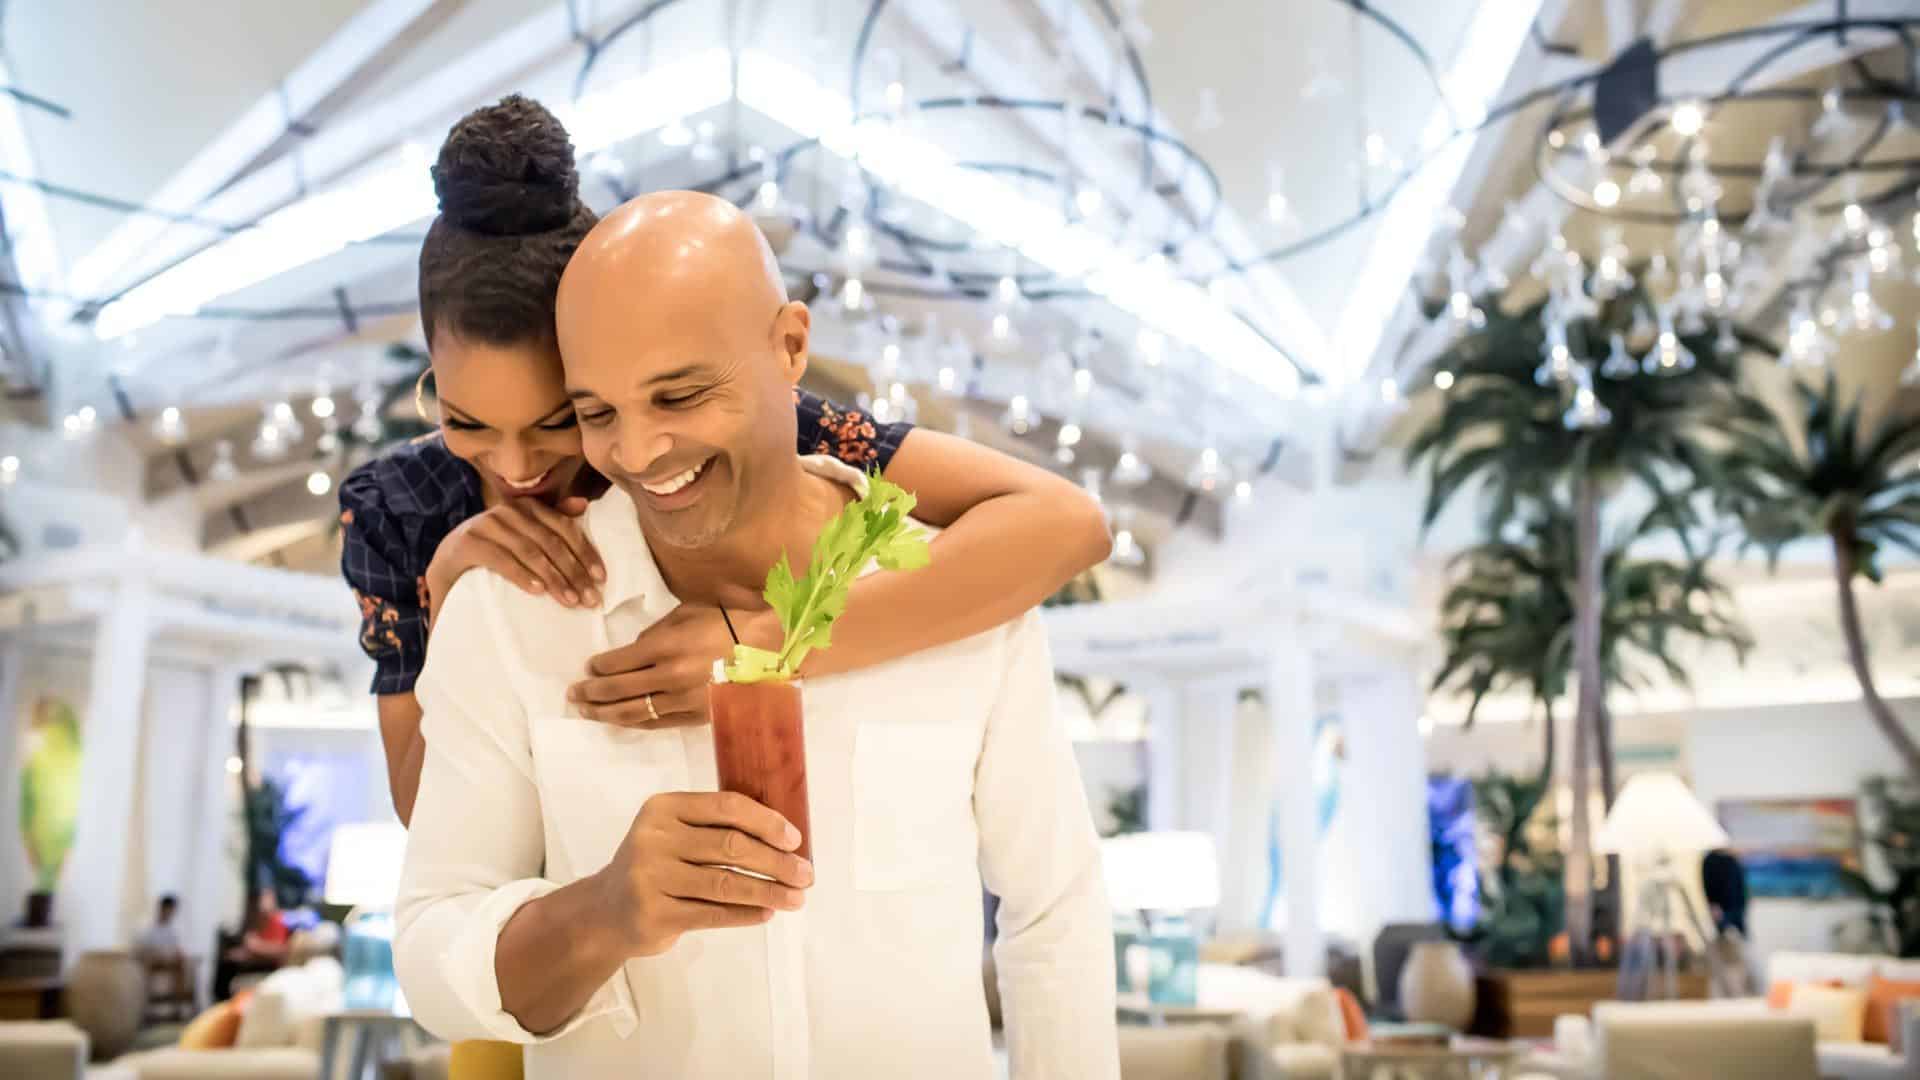 Marido e mulher se abraçando e sorrindo no saguão do Margaritaville Resort Orlando.